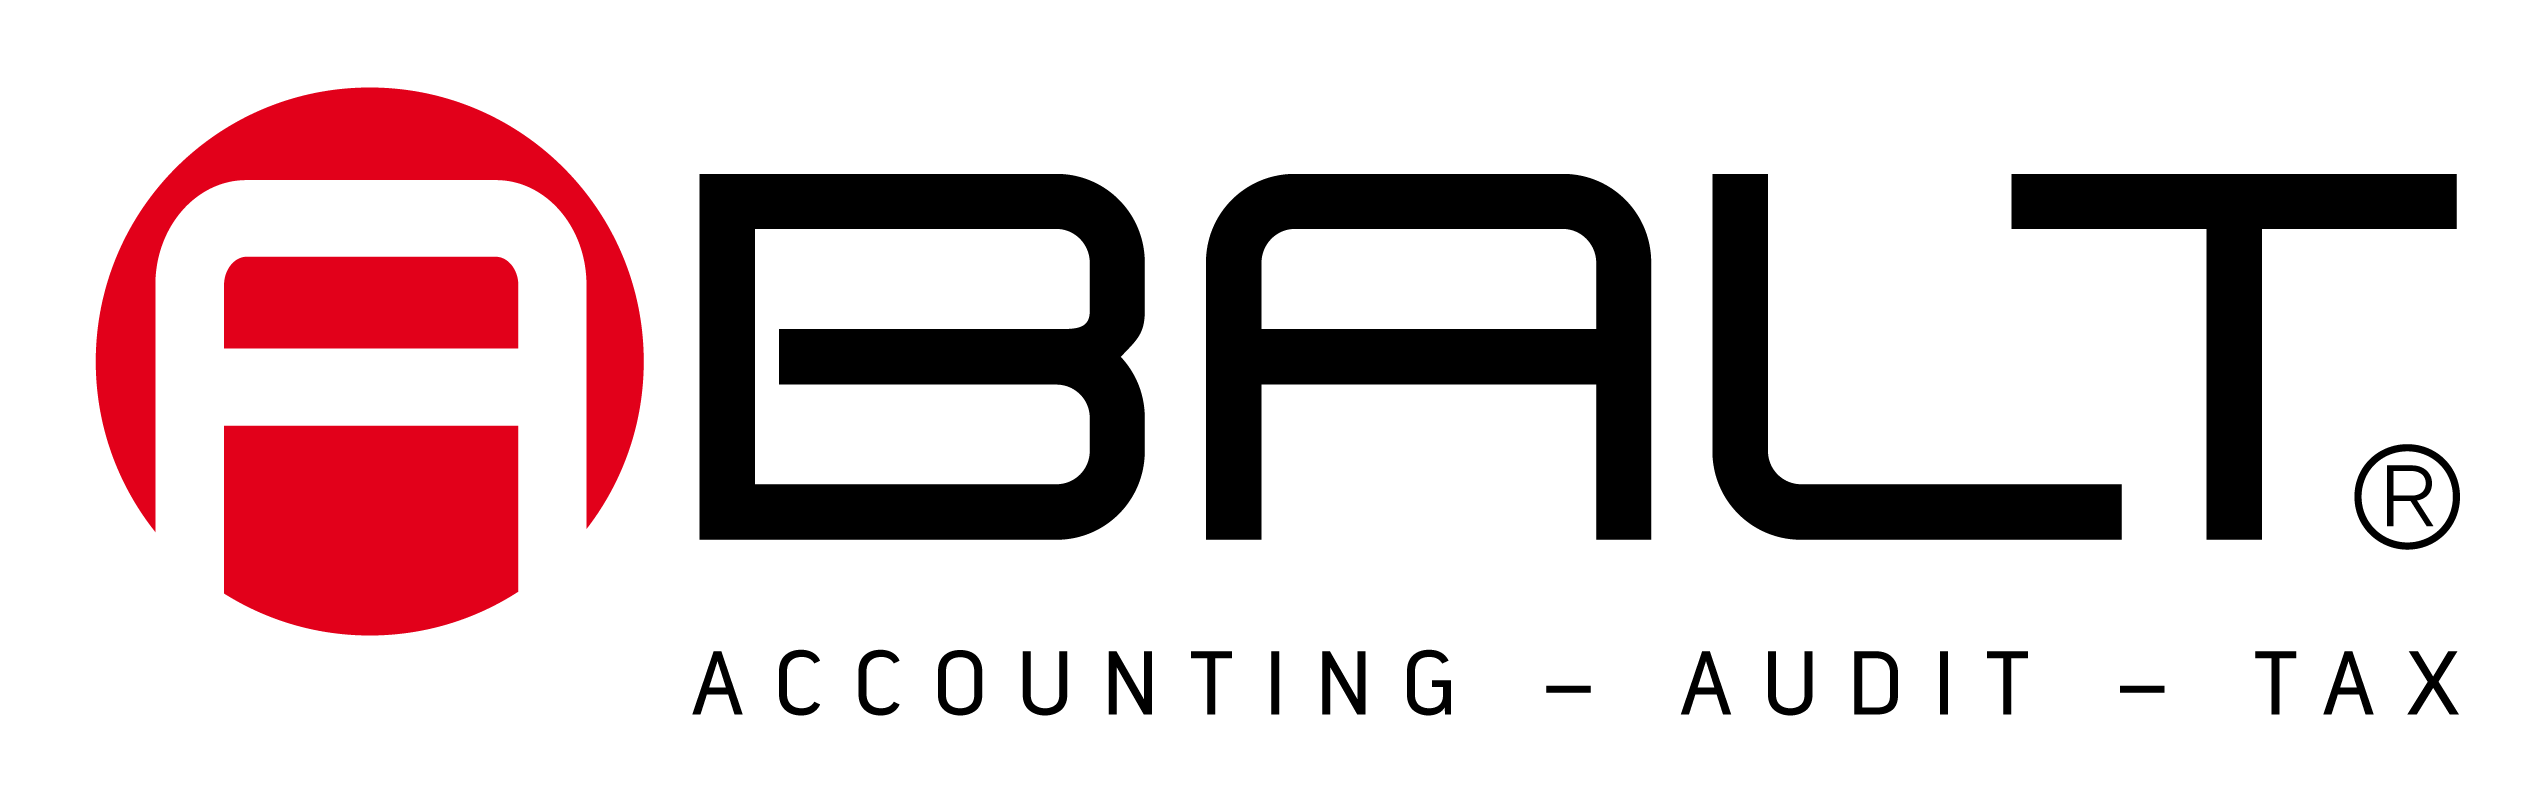 Abalt’s logo